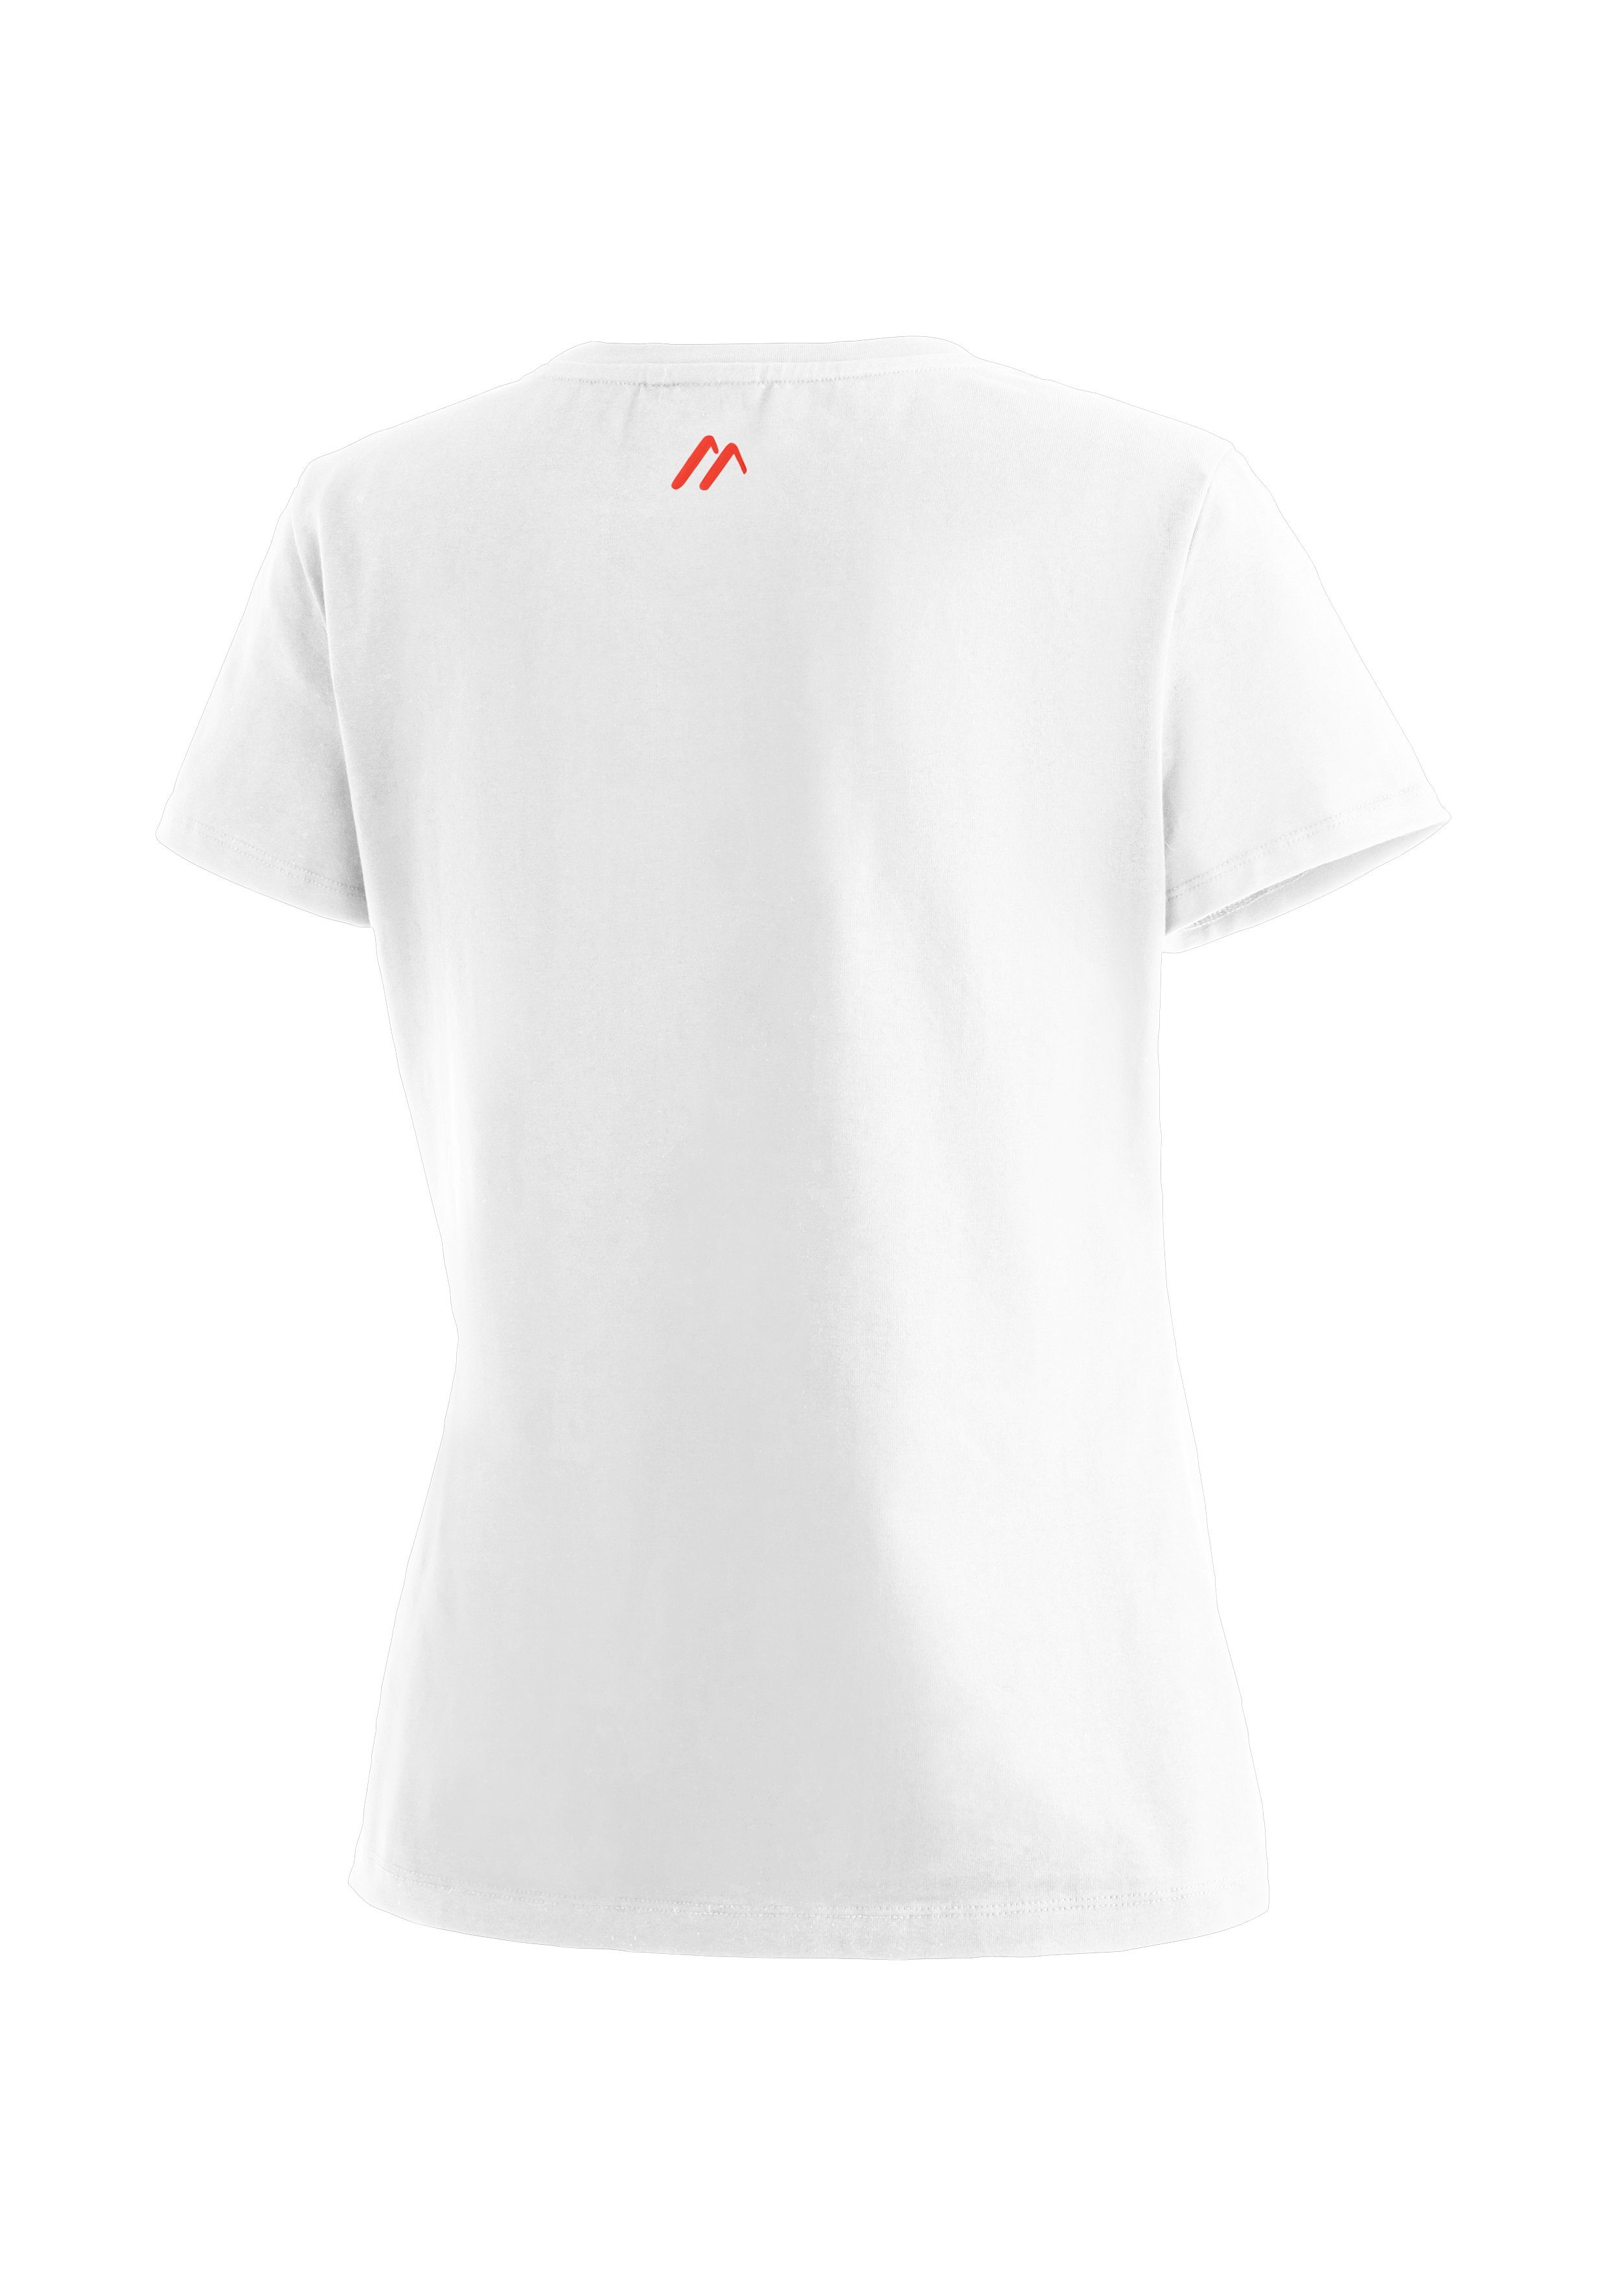 MS Sports W aus Tee elastischem Material weiß Vielseitiges Funktionsshirt Maier Rundhalsshirt